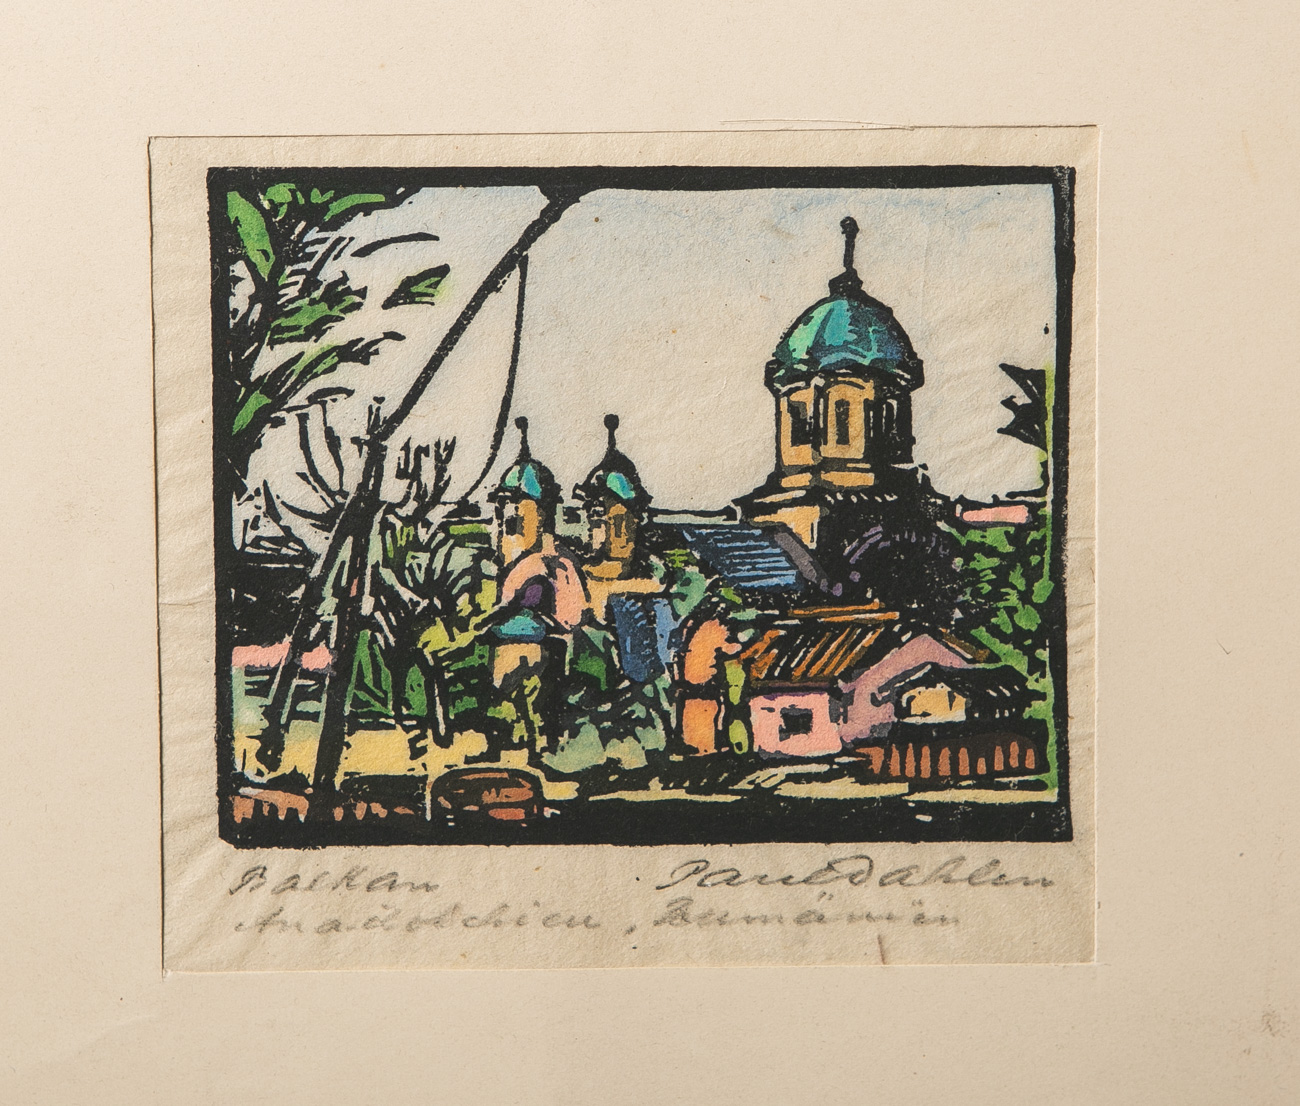 Dahlen, Paul (1881-1954), bez. "Balkan", wohl Holzschnitt (koloriert), unten rechtshandsigniert